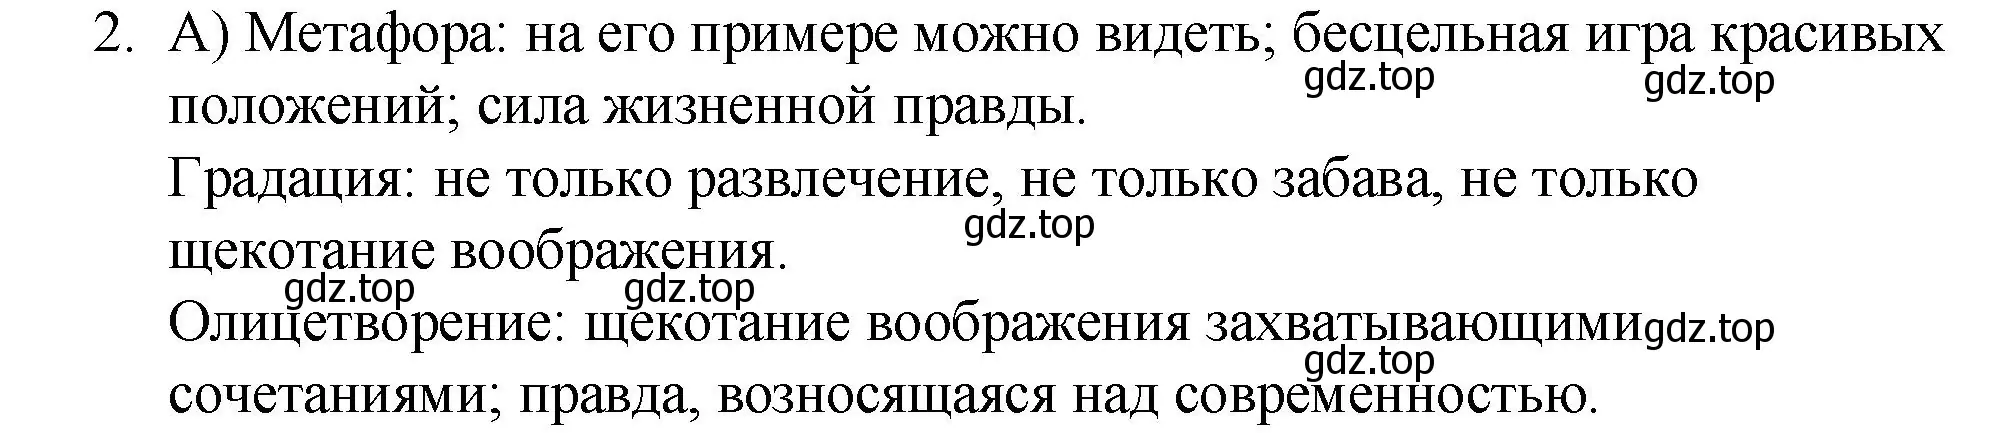 Решение номер 2 (страница 339) гдз по русскому языку 10-11 класс Гольцова, Шамшин, учебник 2 часть